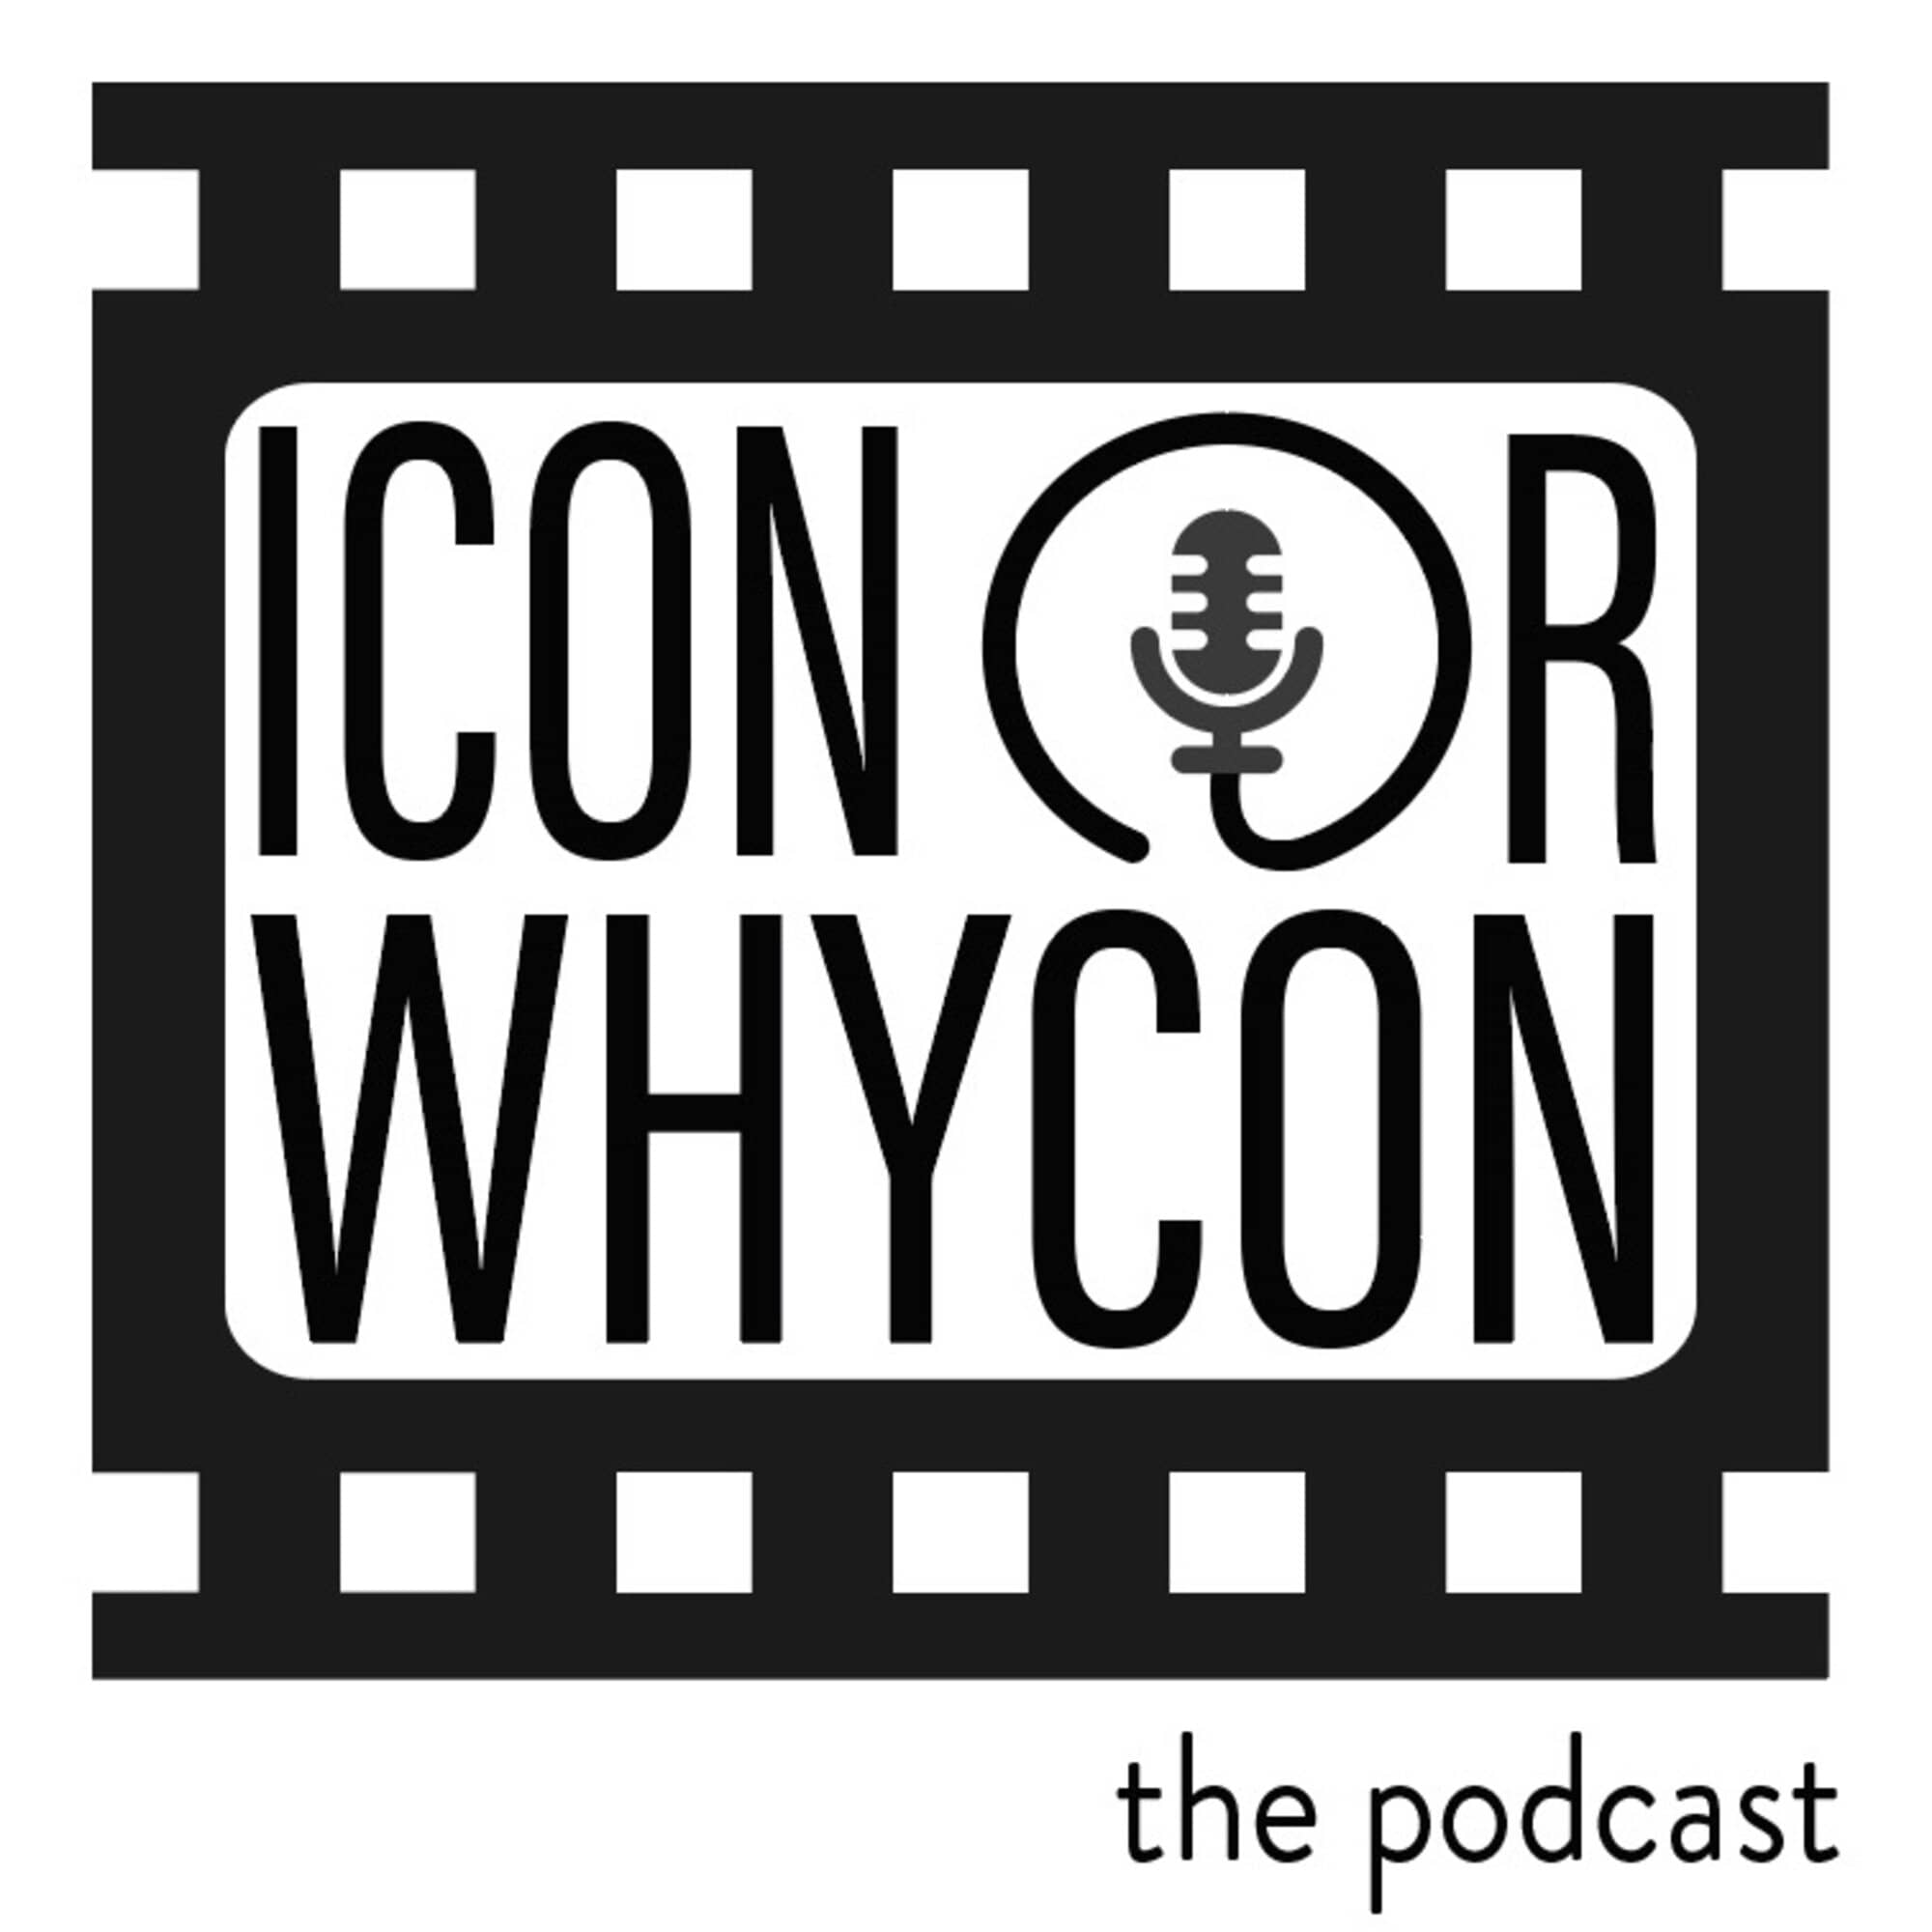 Icon Or Whycon